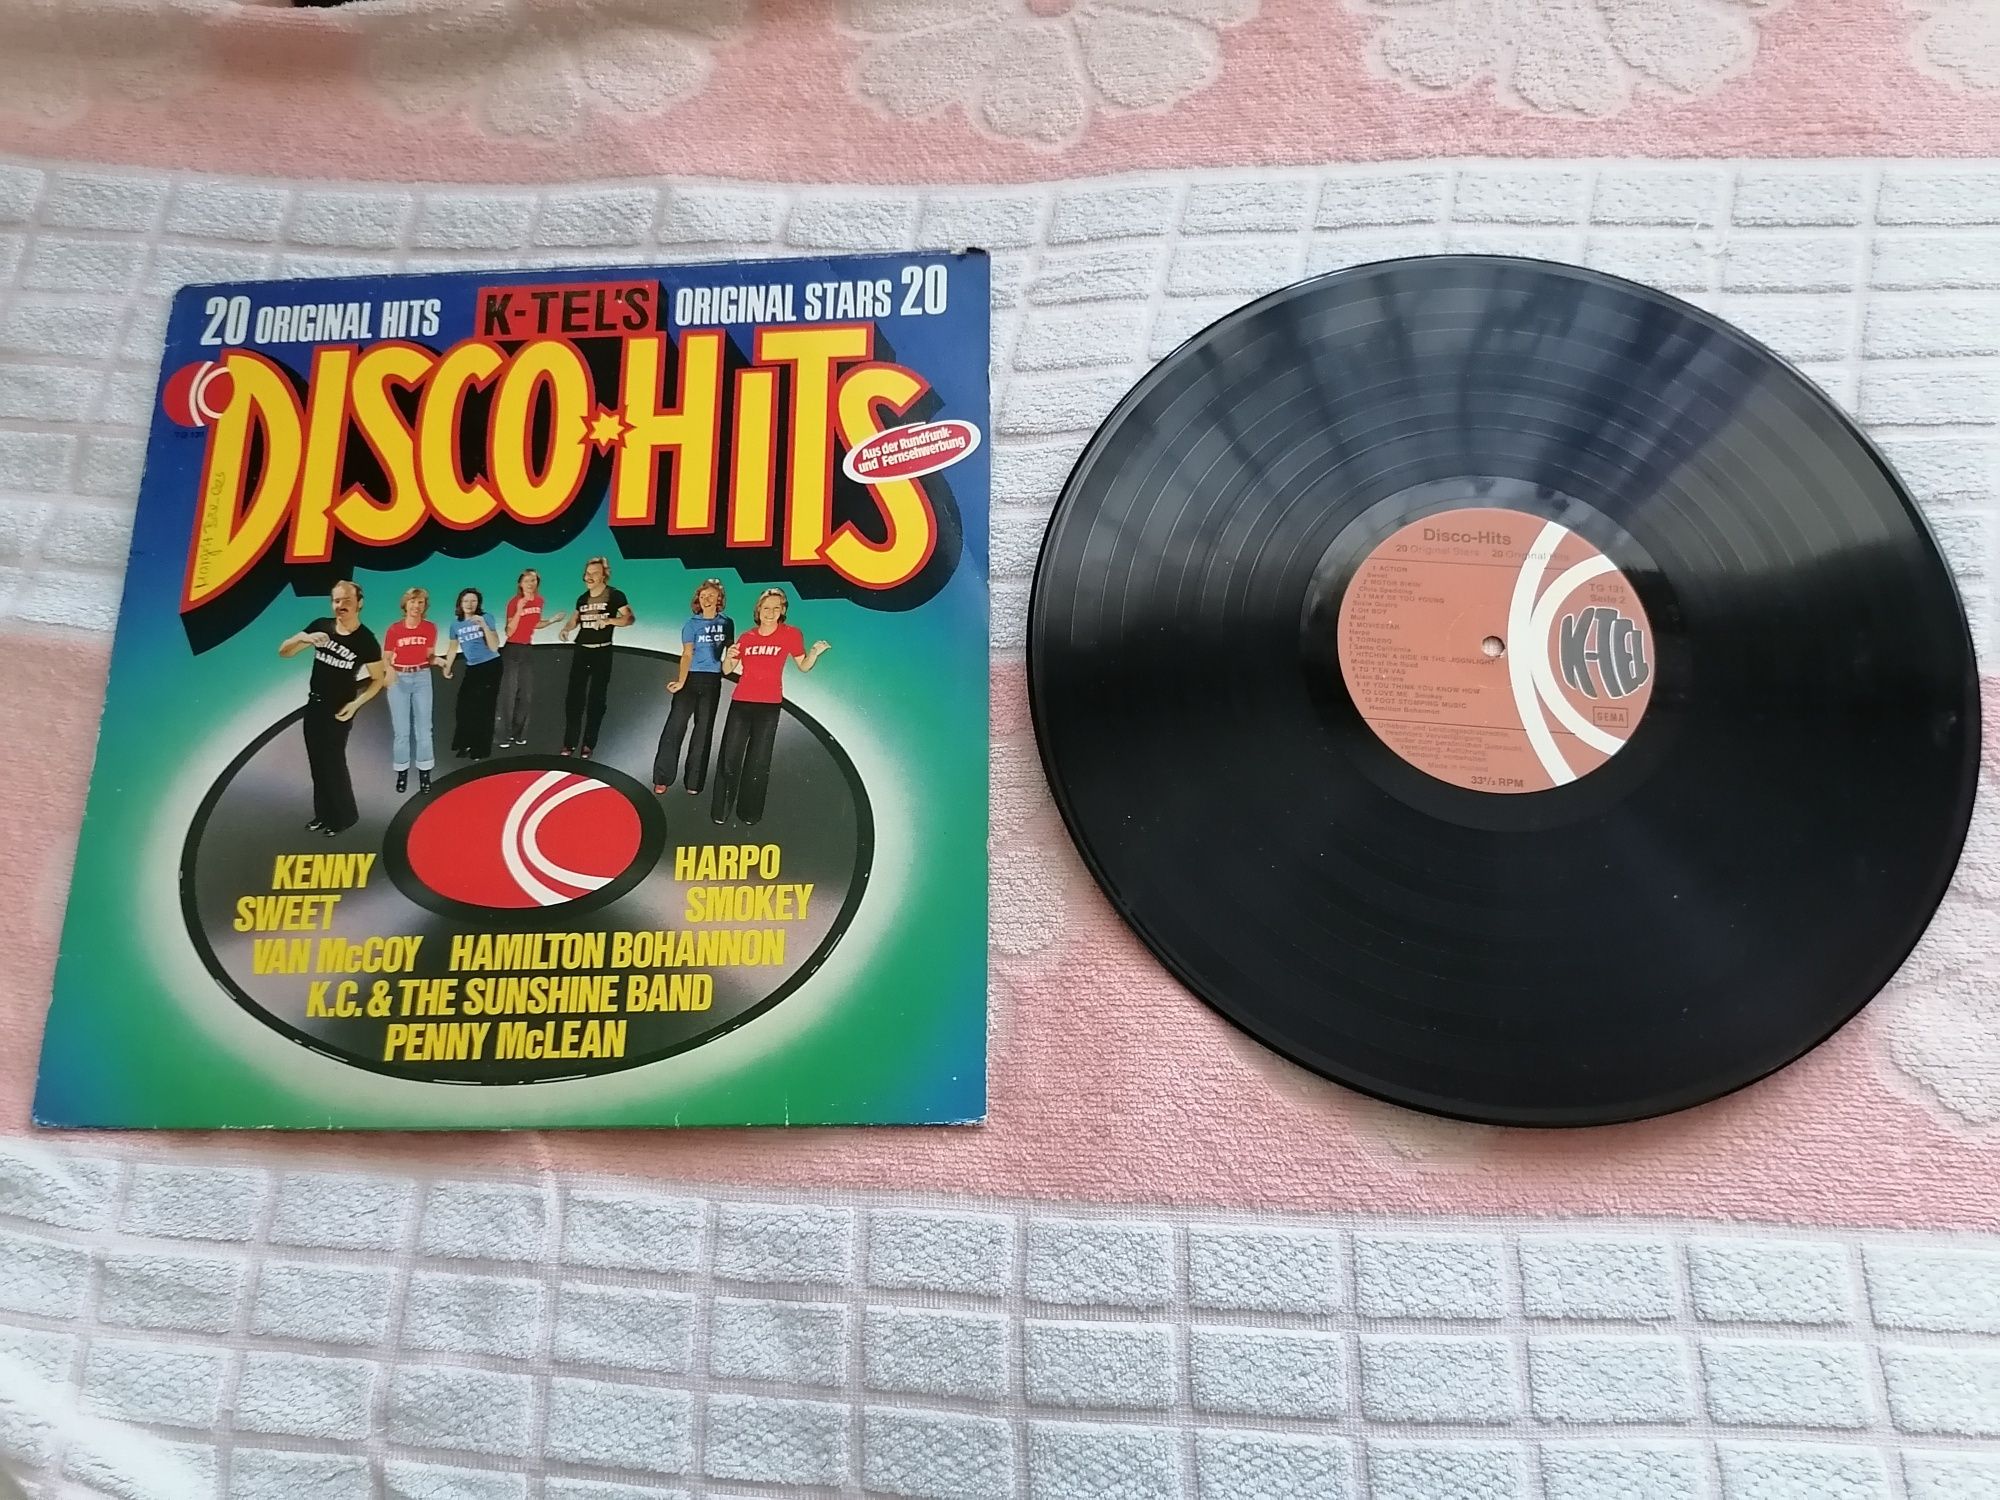 Пластинка, сборник диско хитов 70-х годов.